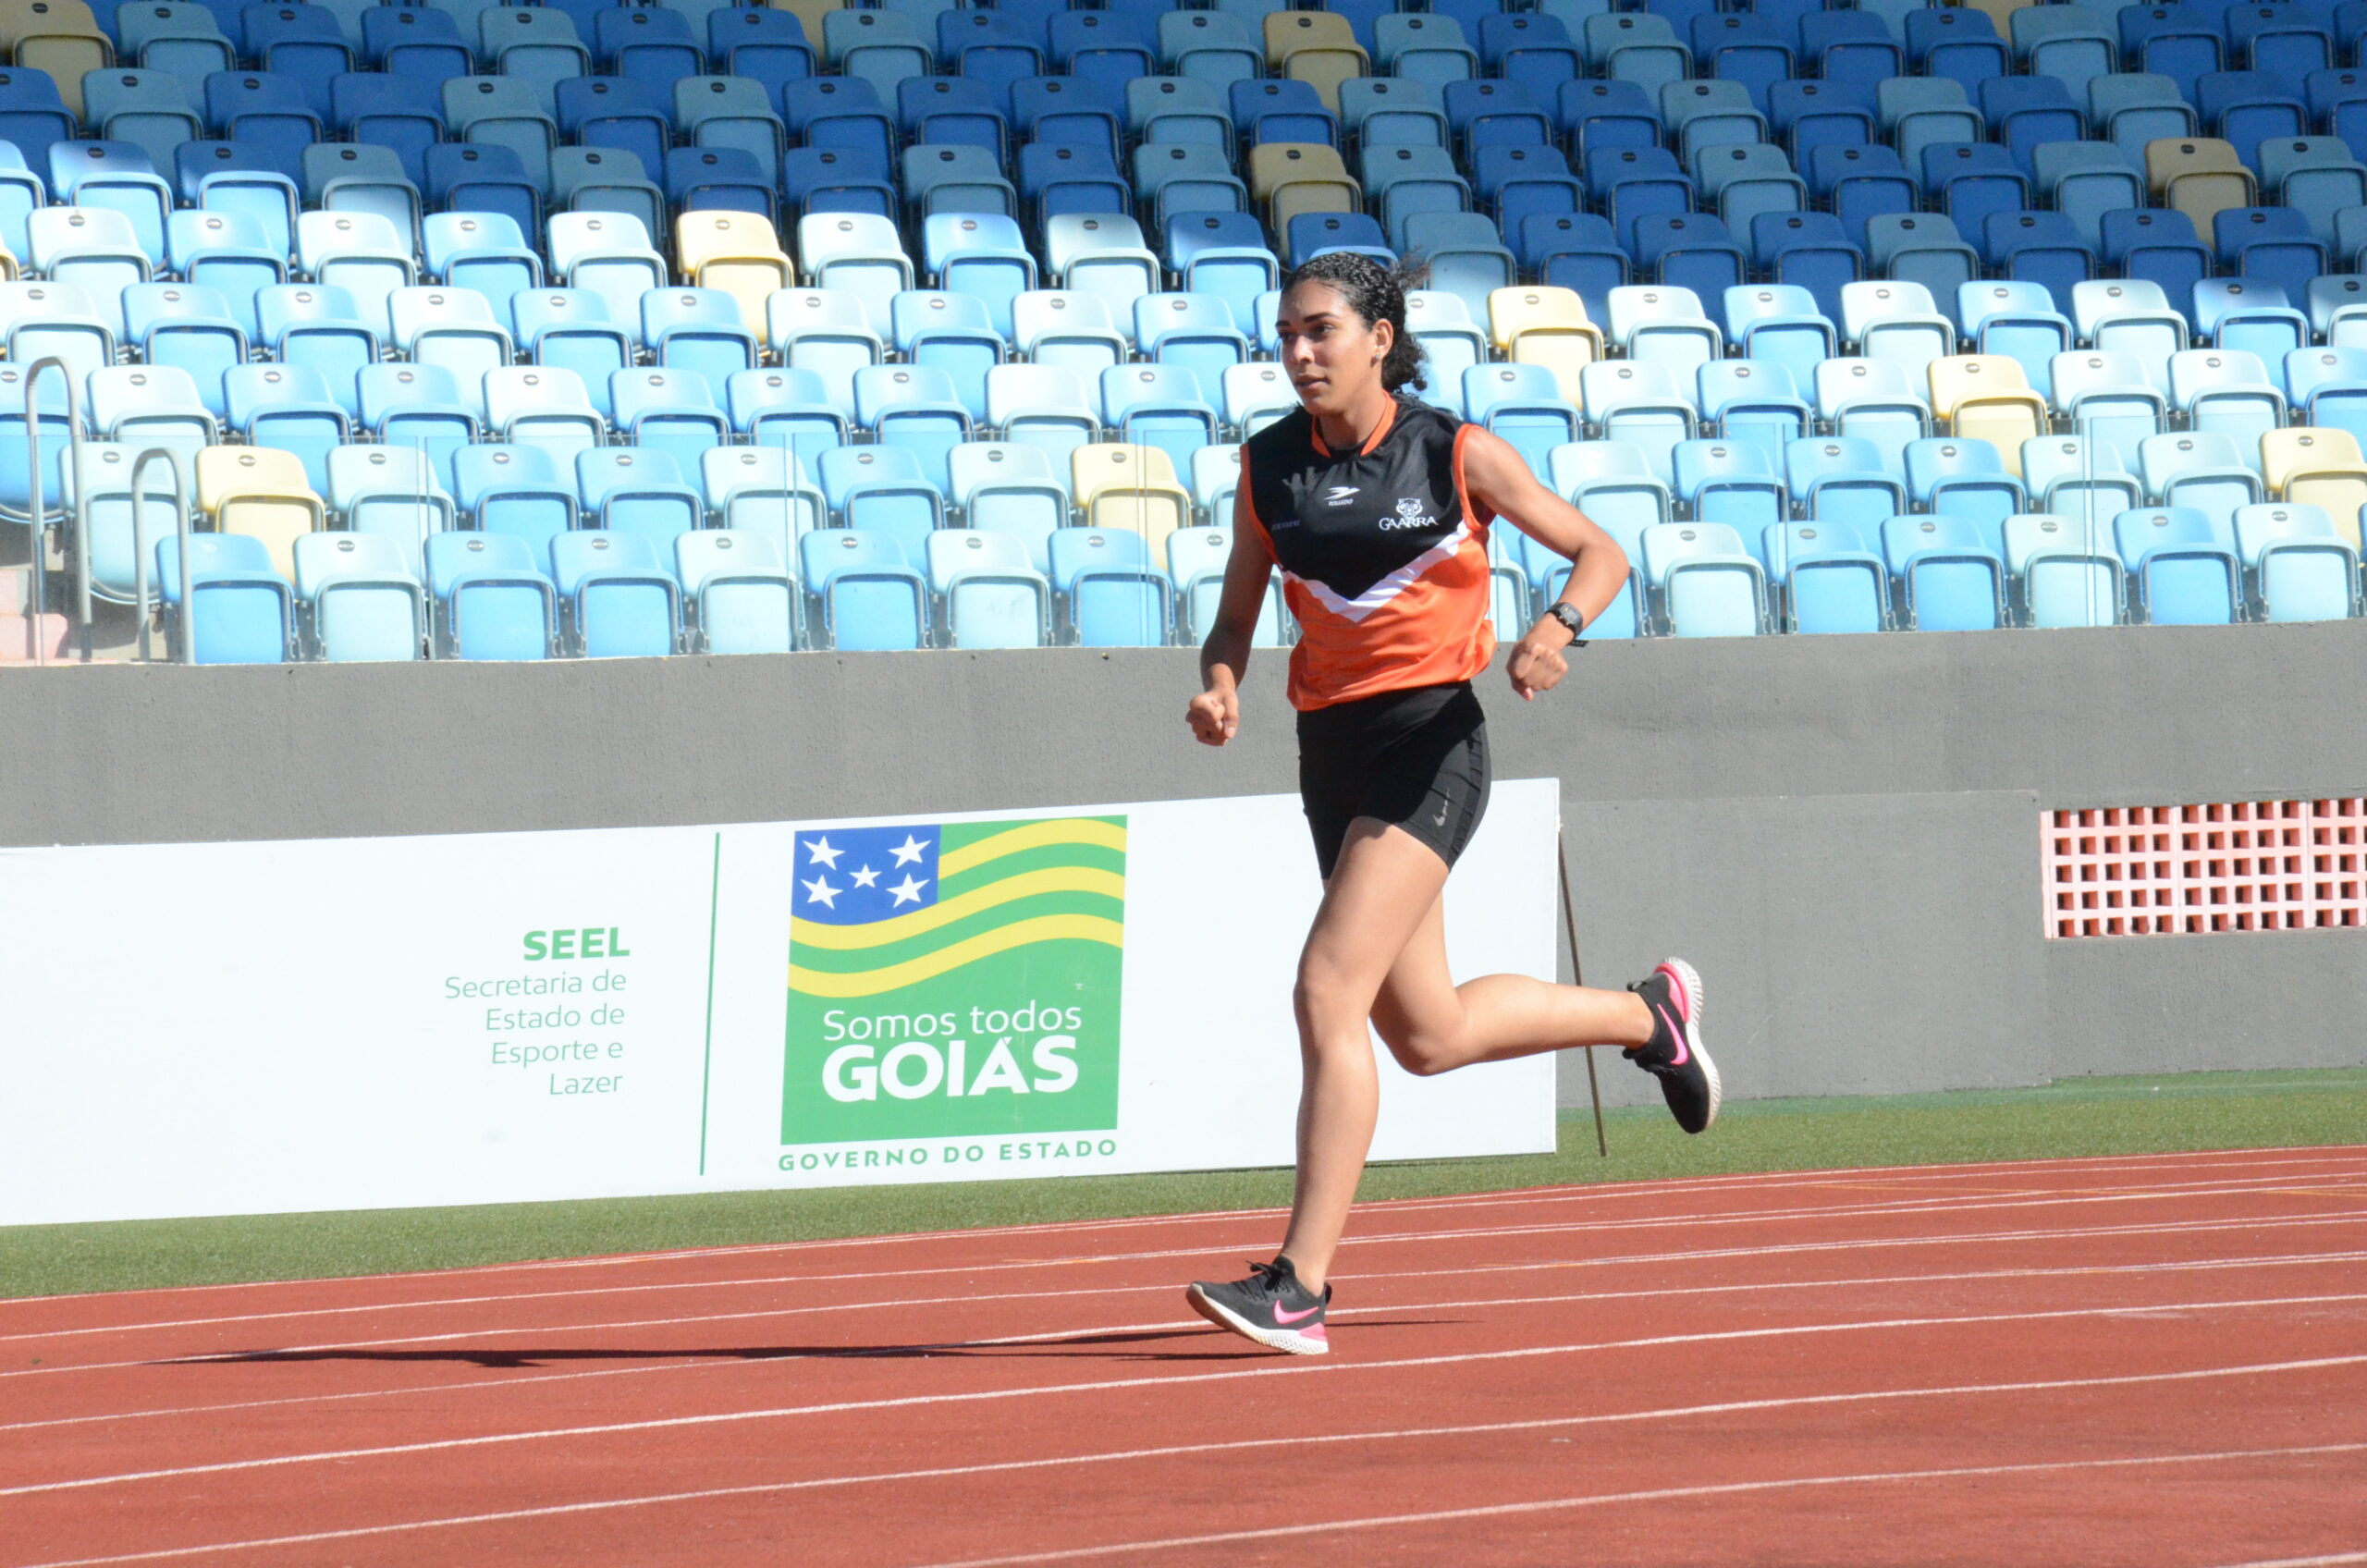 Bolsista do Pró-Atleta conquista bronze no Campeonato Paulista e quebra recorde goiano nos 800 metros